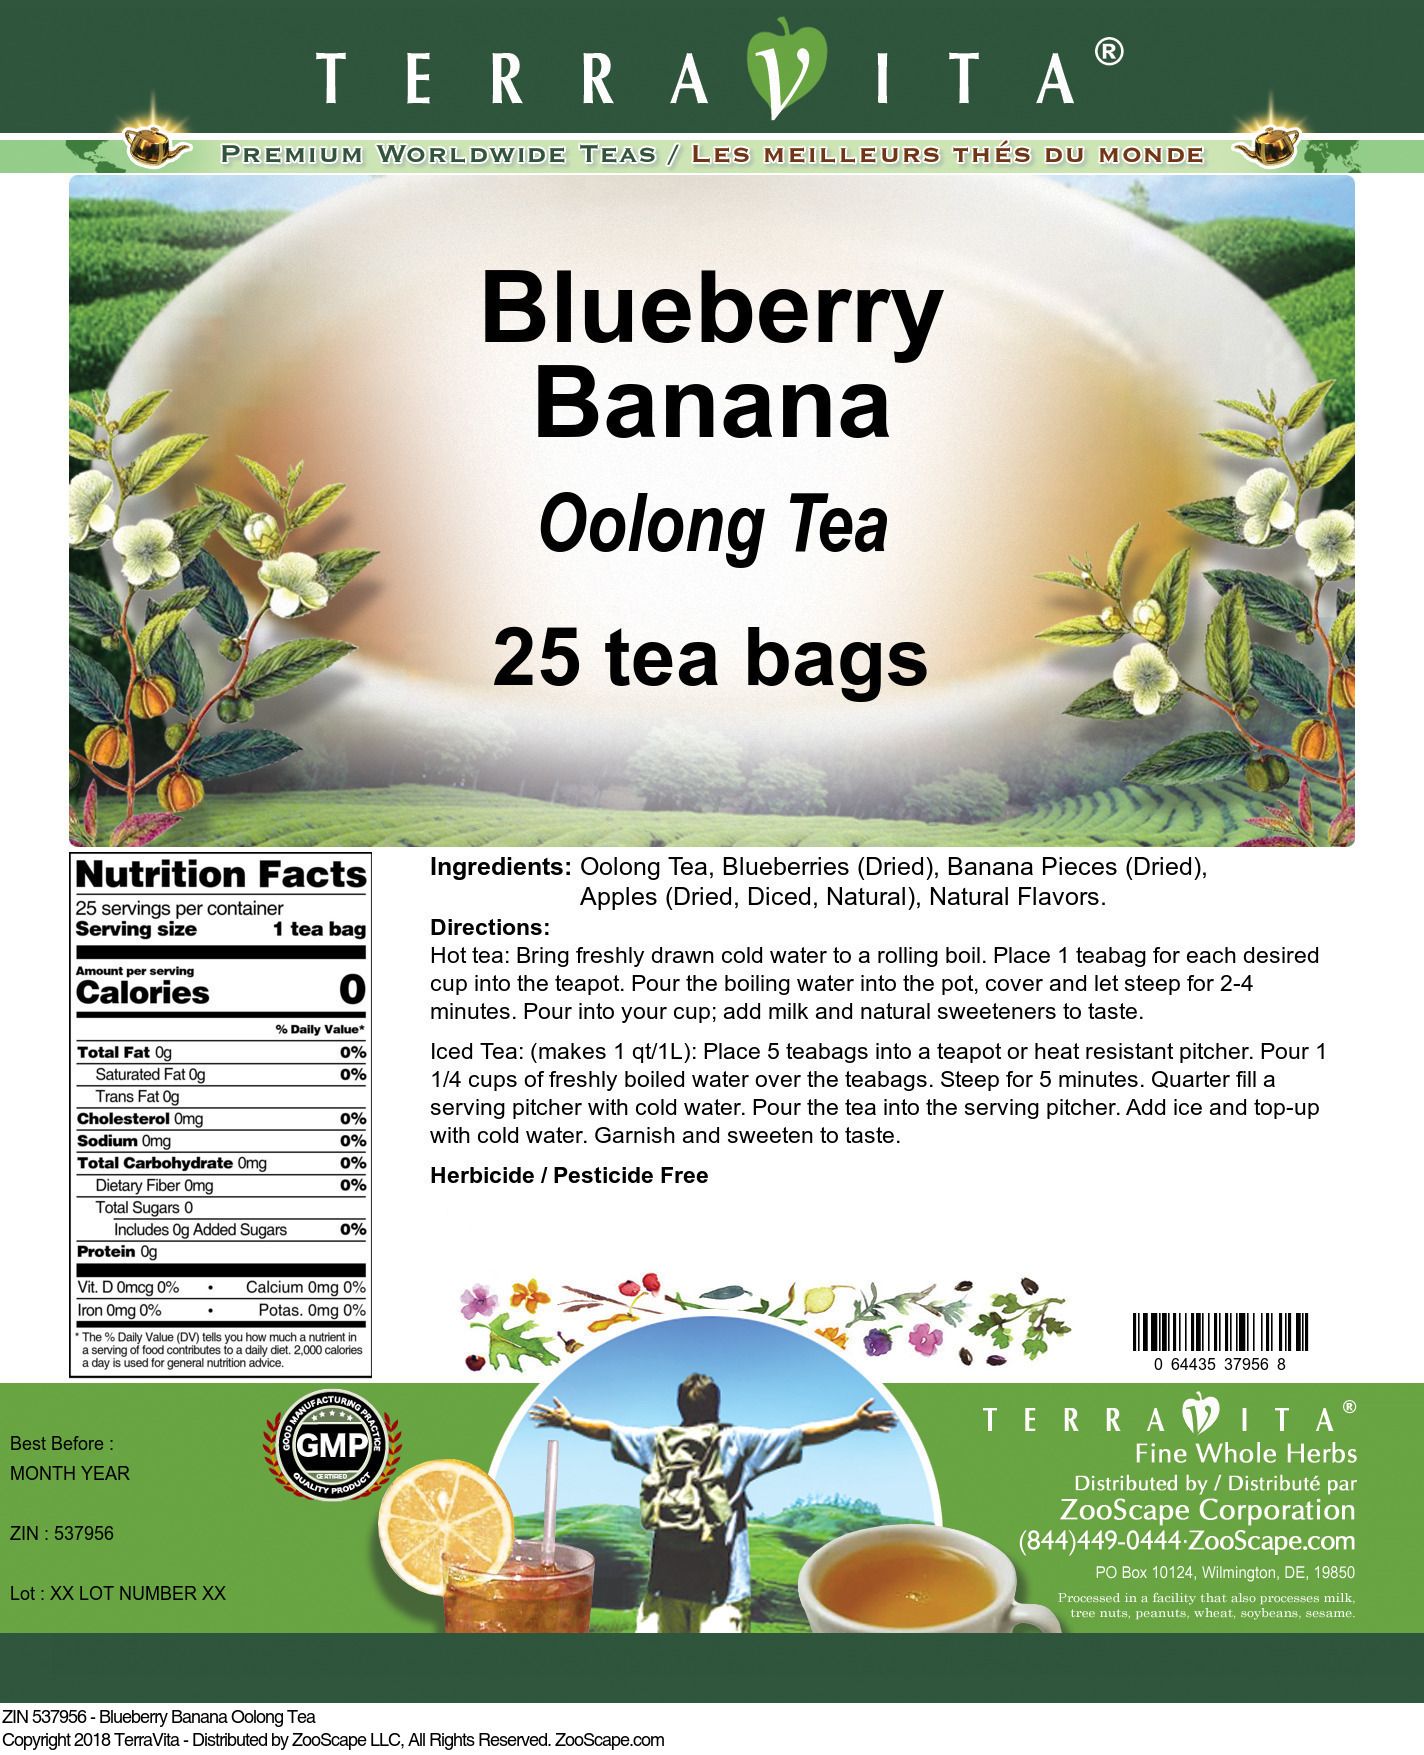 Blueberry Banana Oolong Tea - Label